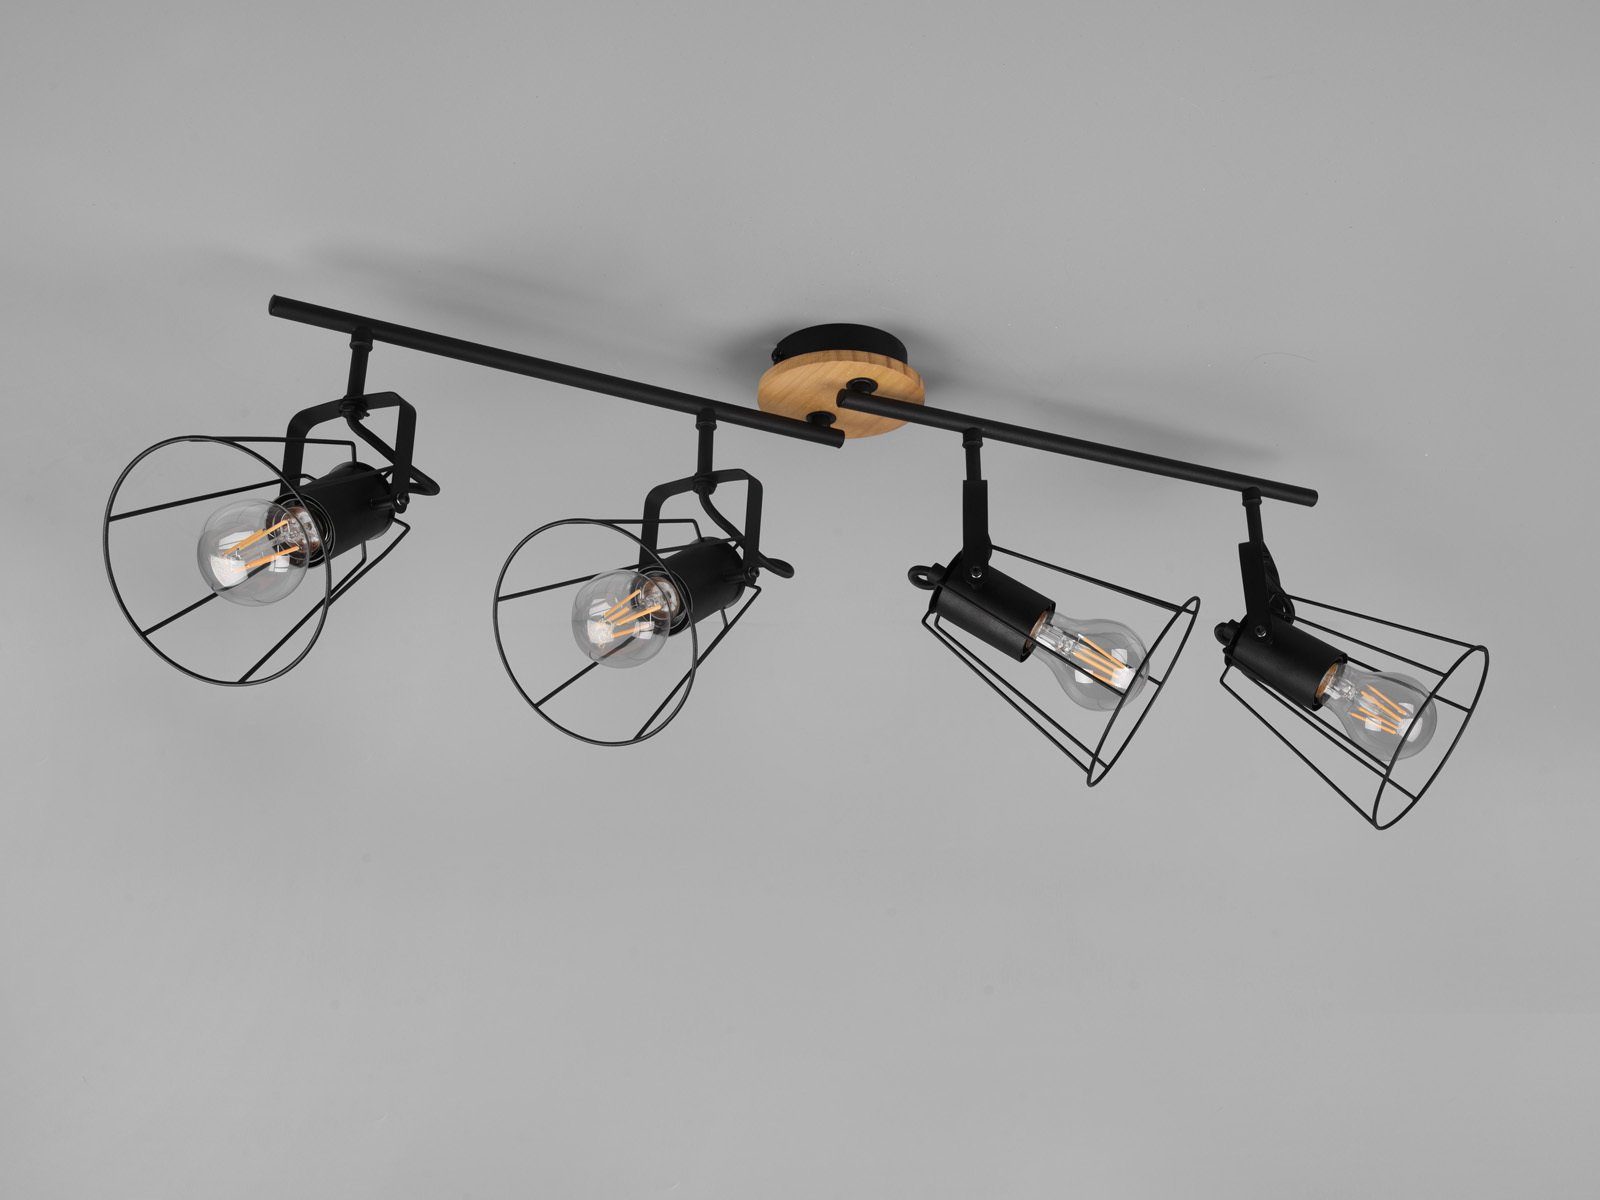 LED Warmweiß, Industriedesign meineWunschleuchte LED Holz Breite wechselbar, Deckenstrahler, Dimmfunktion, Gitterlampe Schwarz mit Esstischlampe 83cm